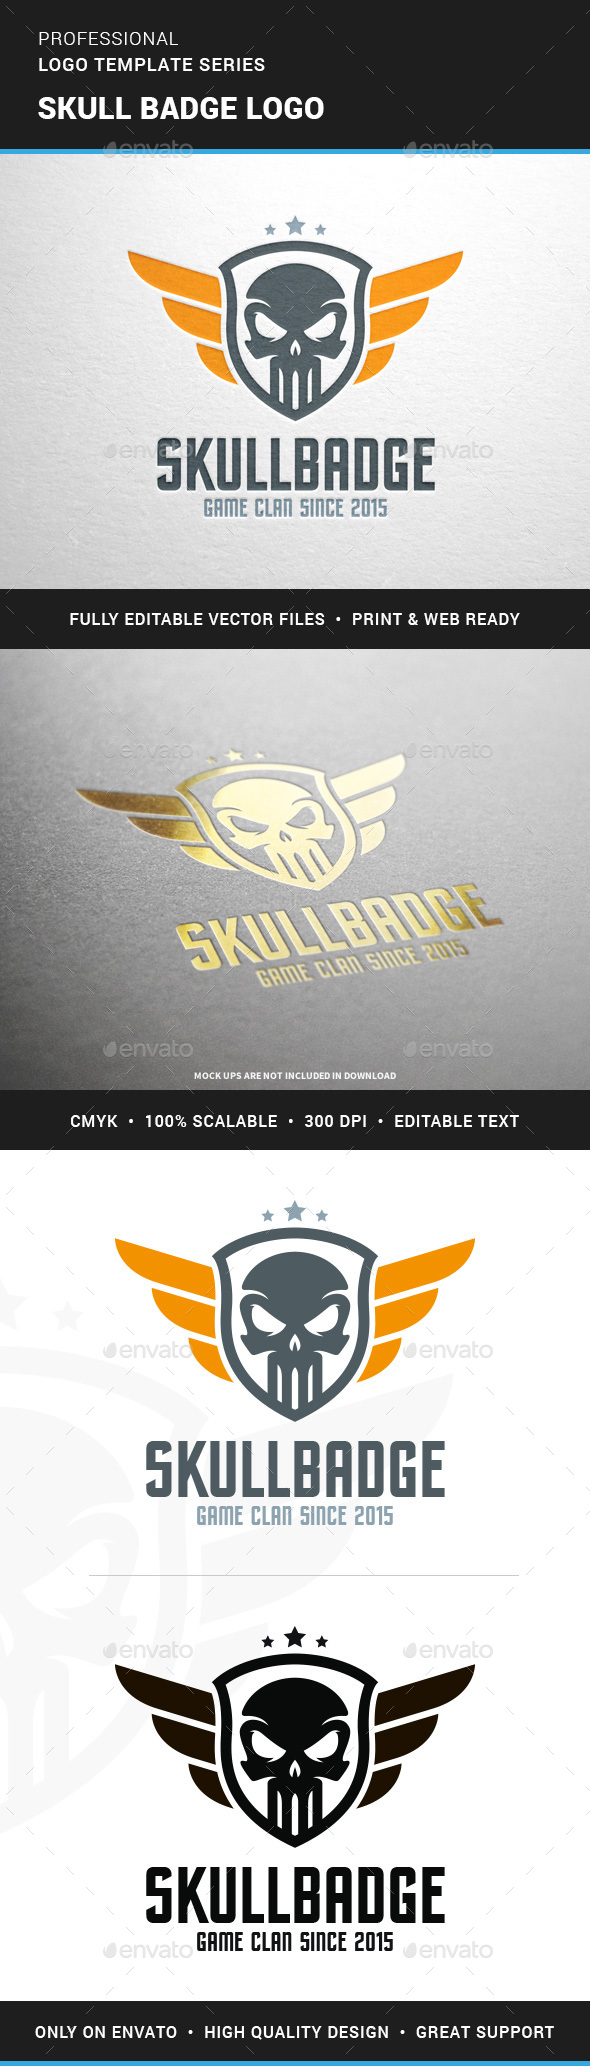 Skull Badge Logo Template